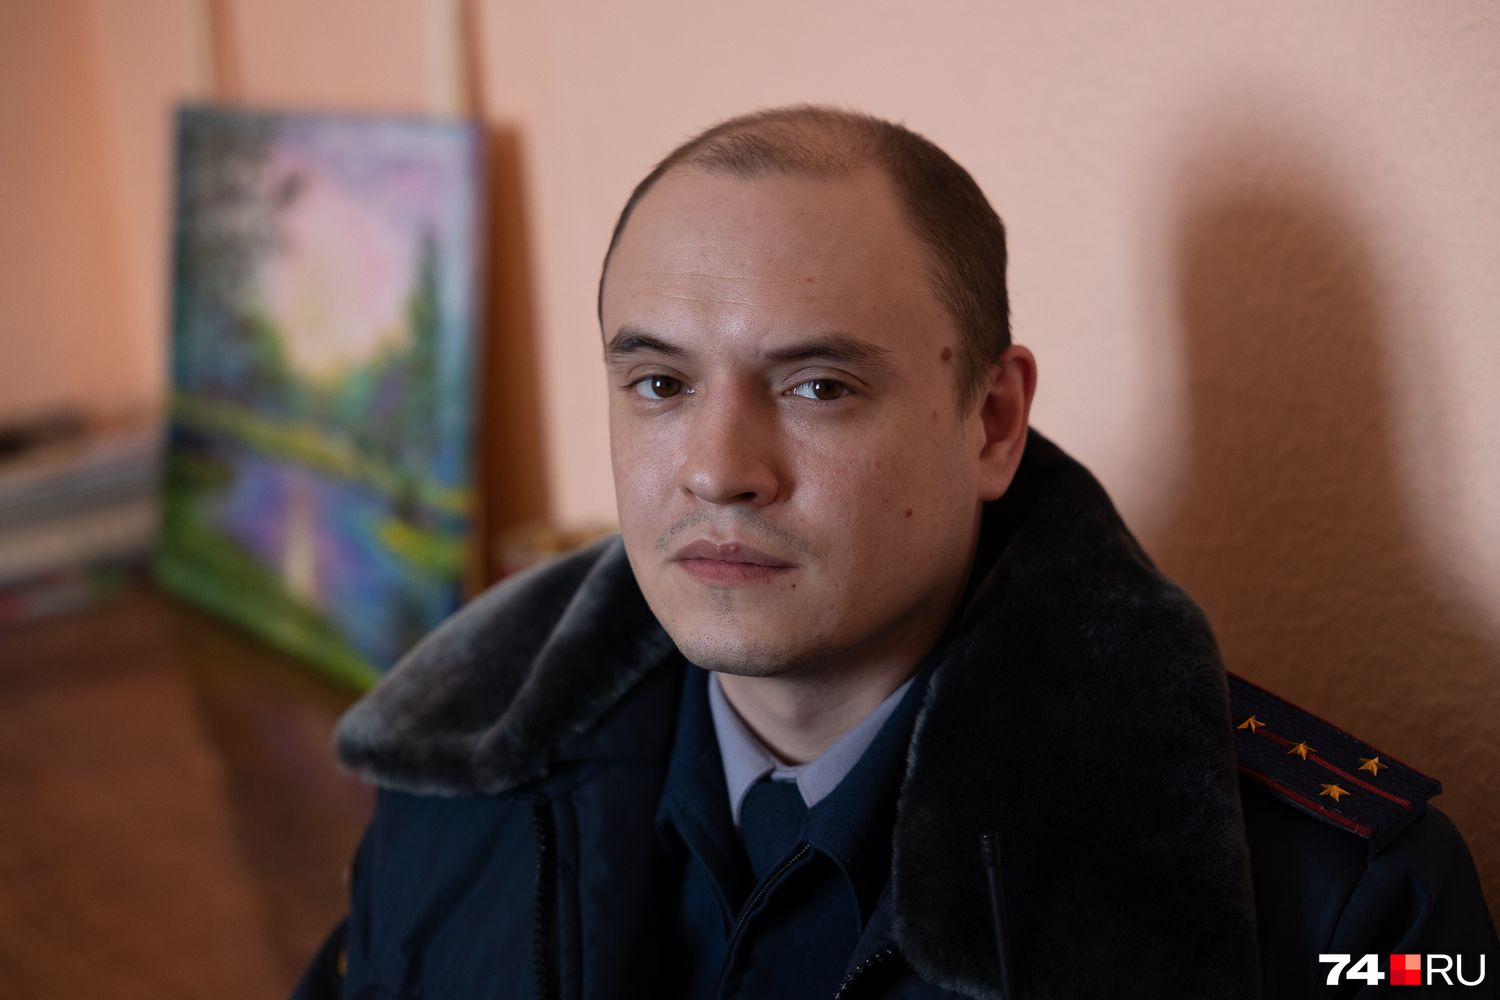 Начальник отдела по воспитательной работе с осужденными Александр Захаров. В числе прочего он помогает осужденным адаптироваться в новом для них месте и выучить порядки